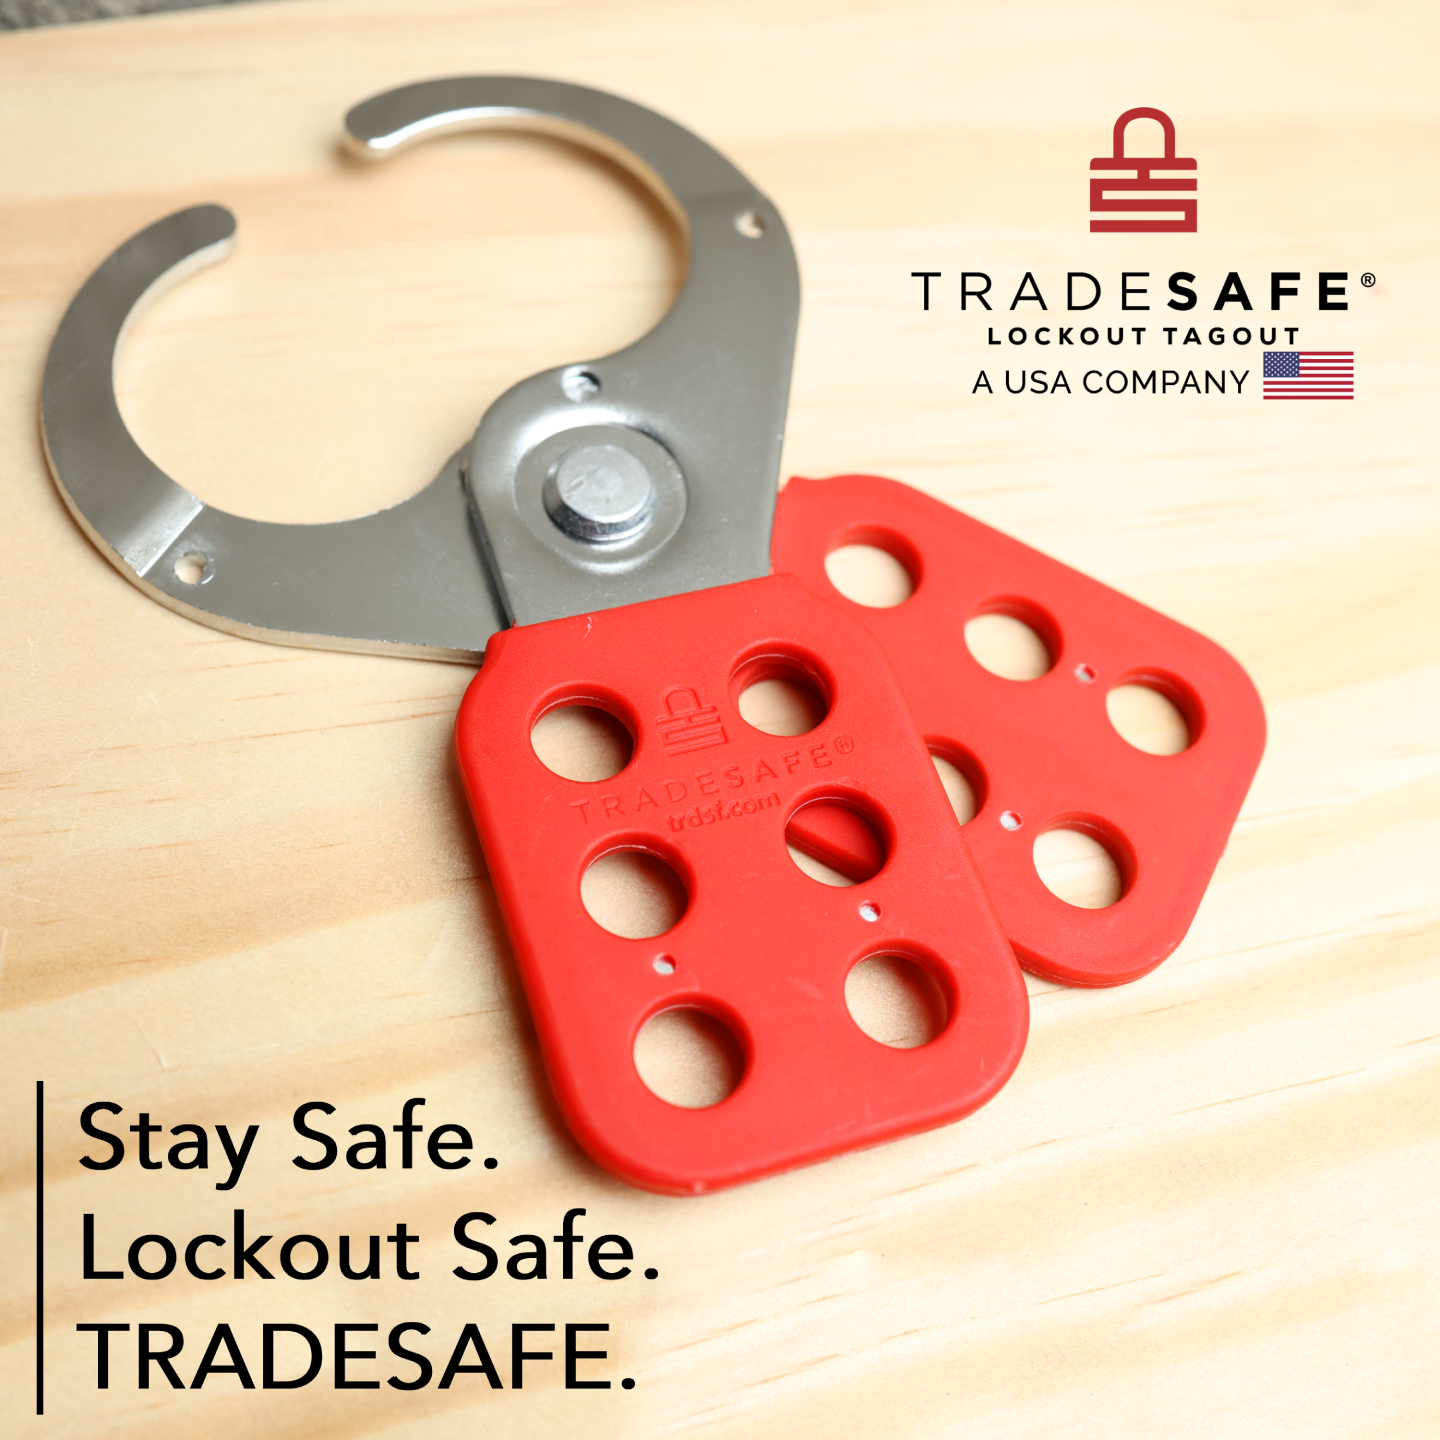 TRADESAFE lockout hasp - stay safe, lockout safe